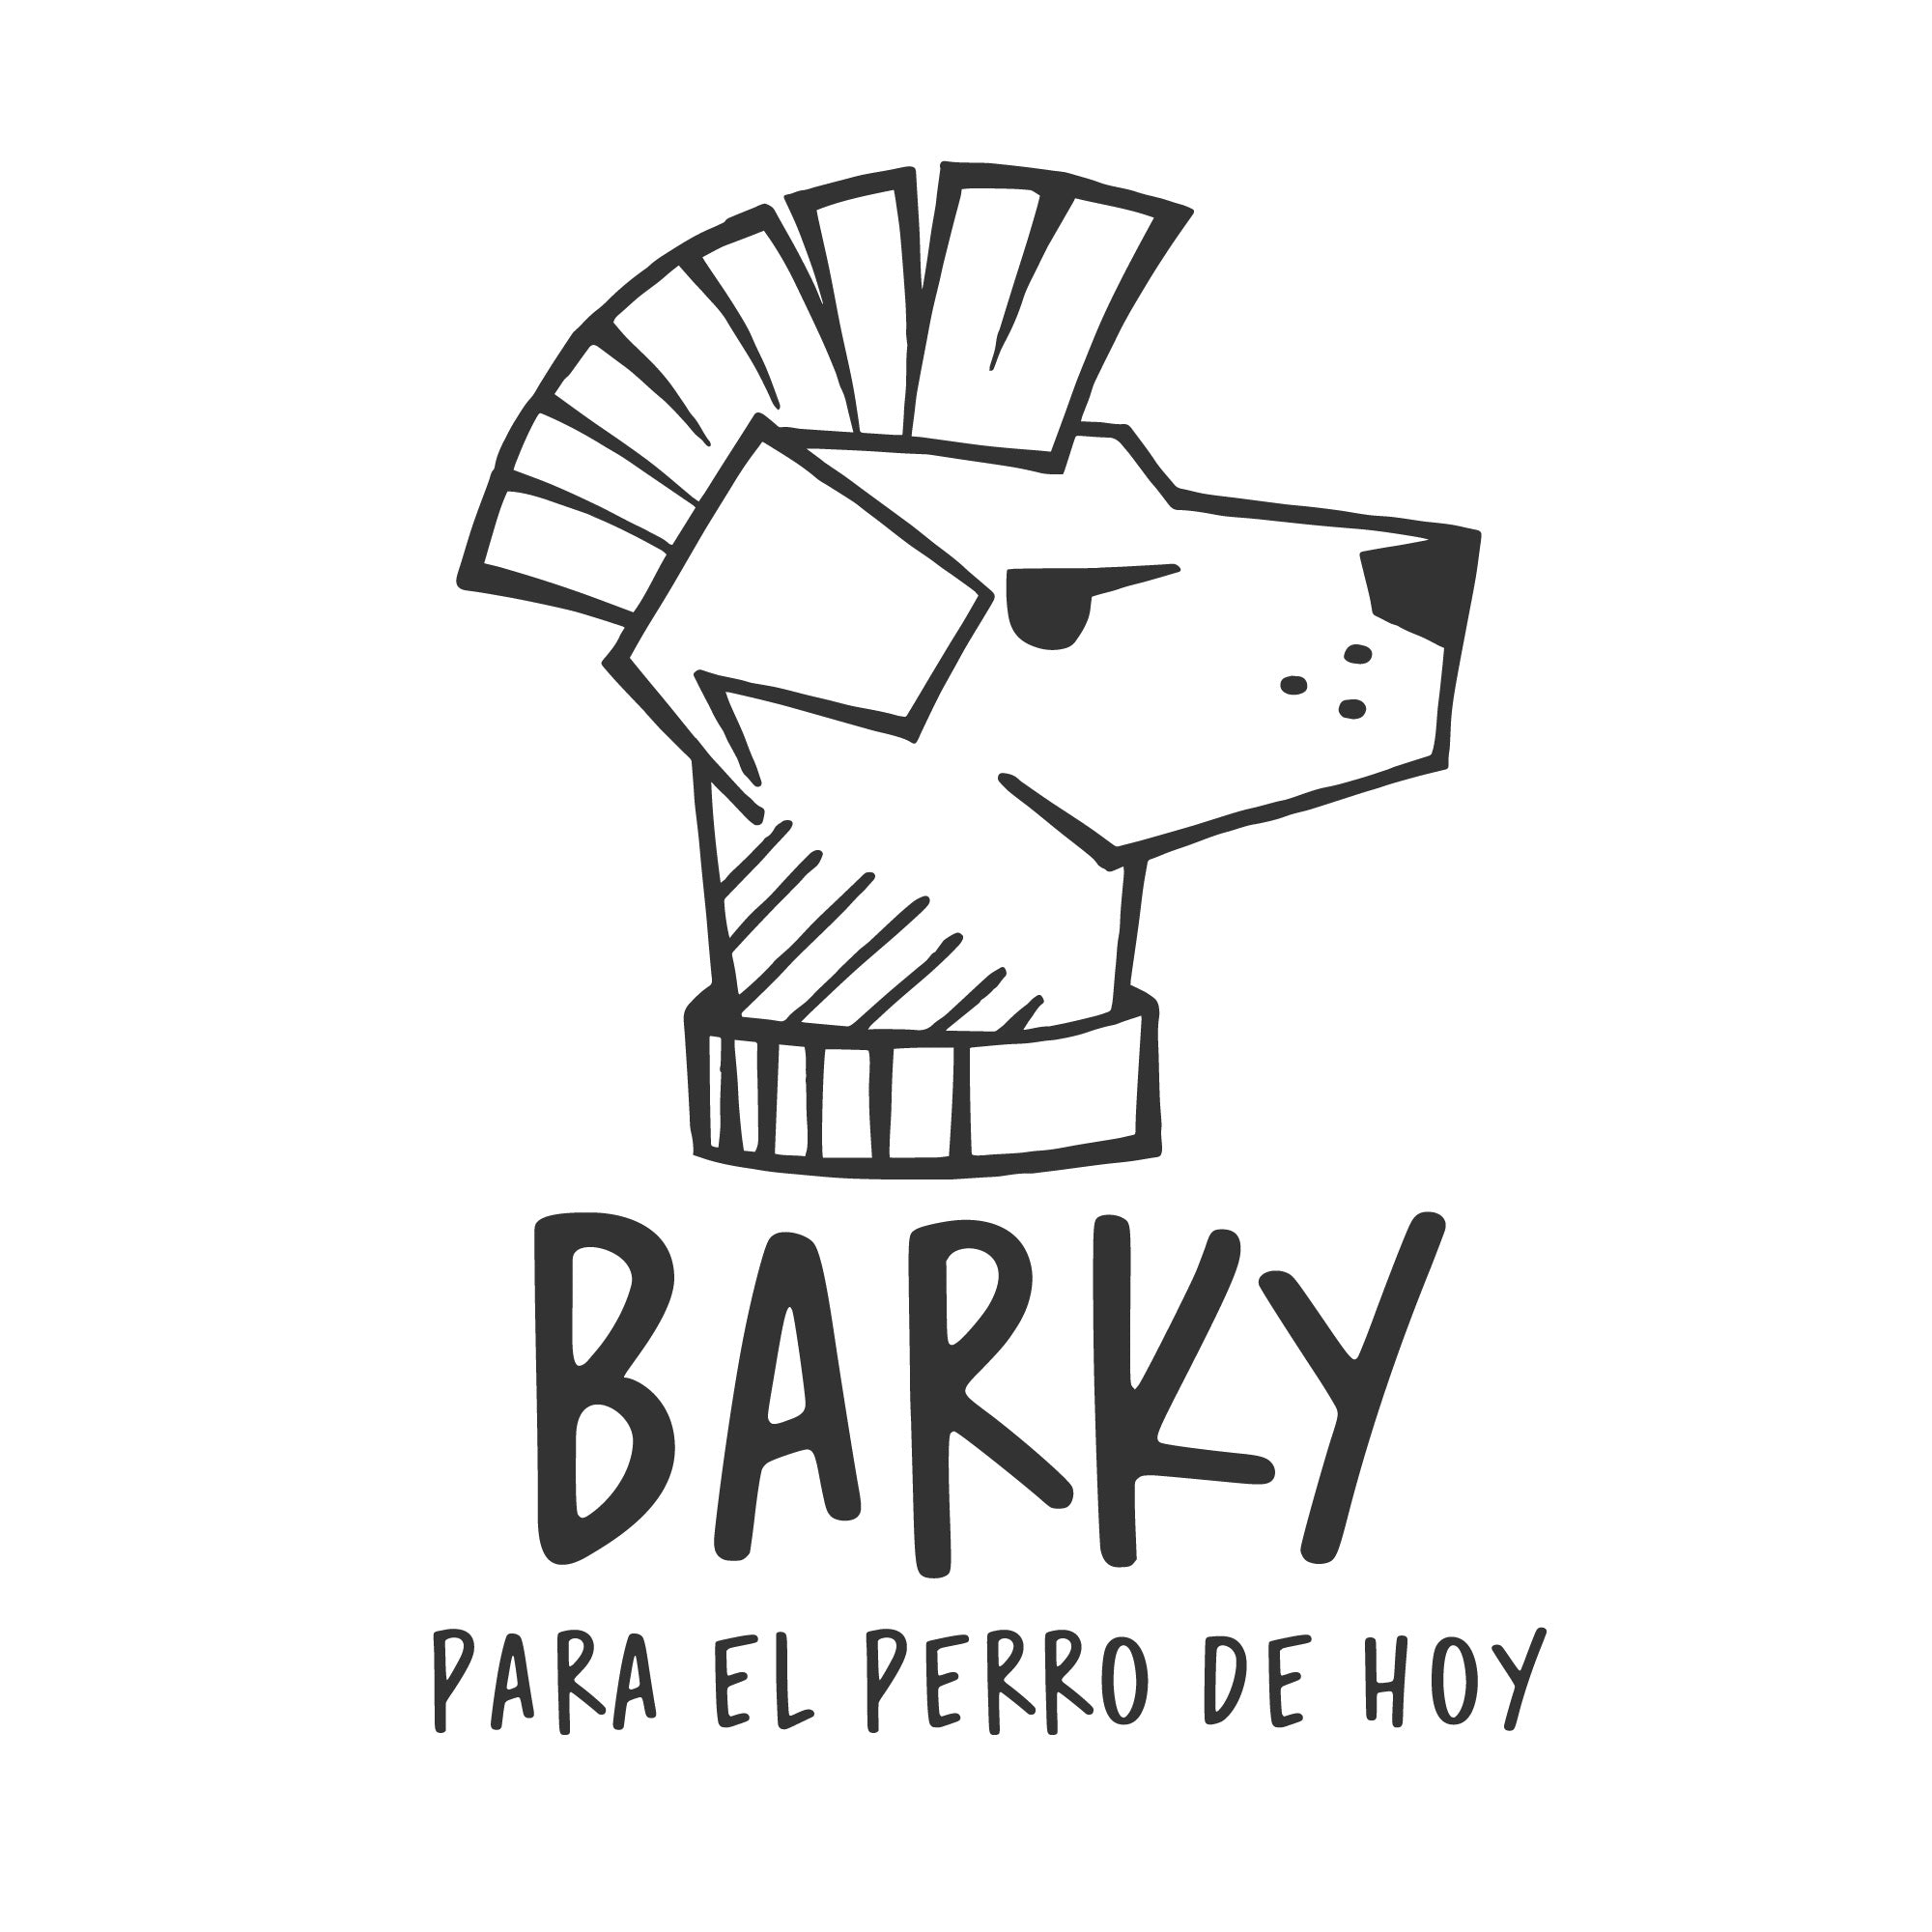 BARKY DOG SHOP - Ropa para perros hecha en Chile y accesorios.